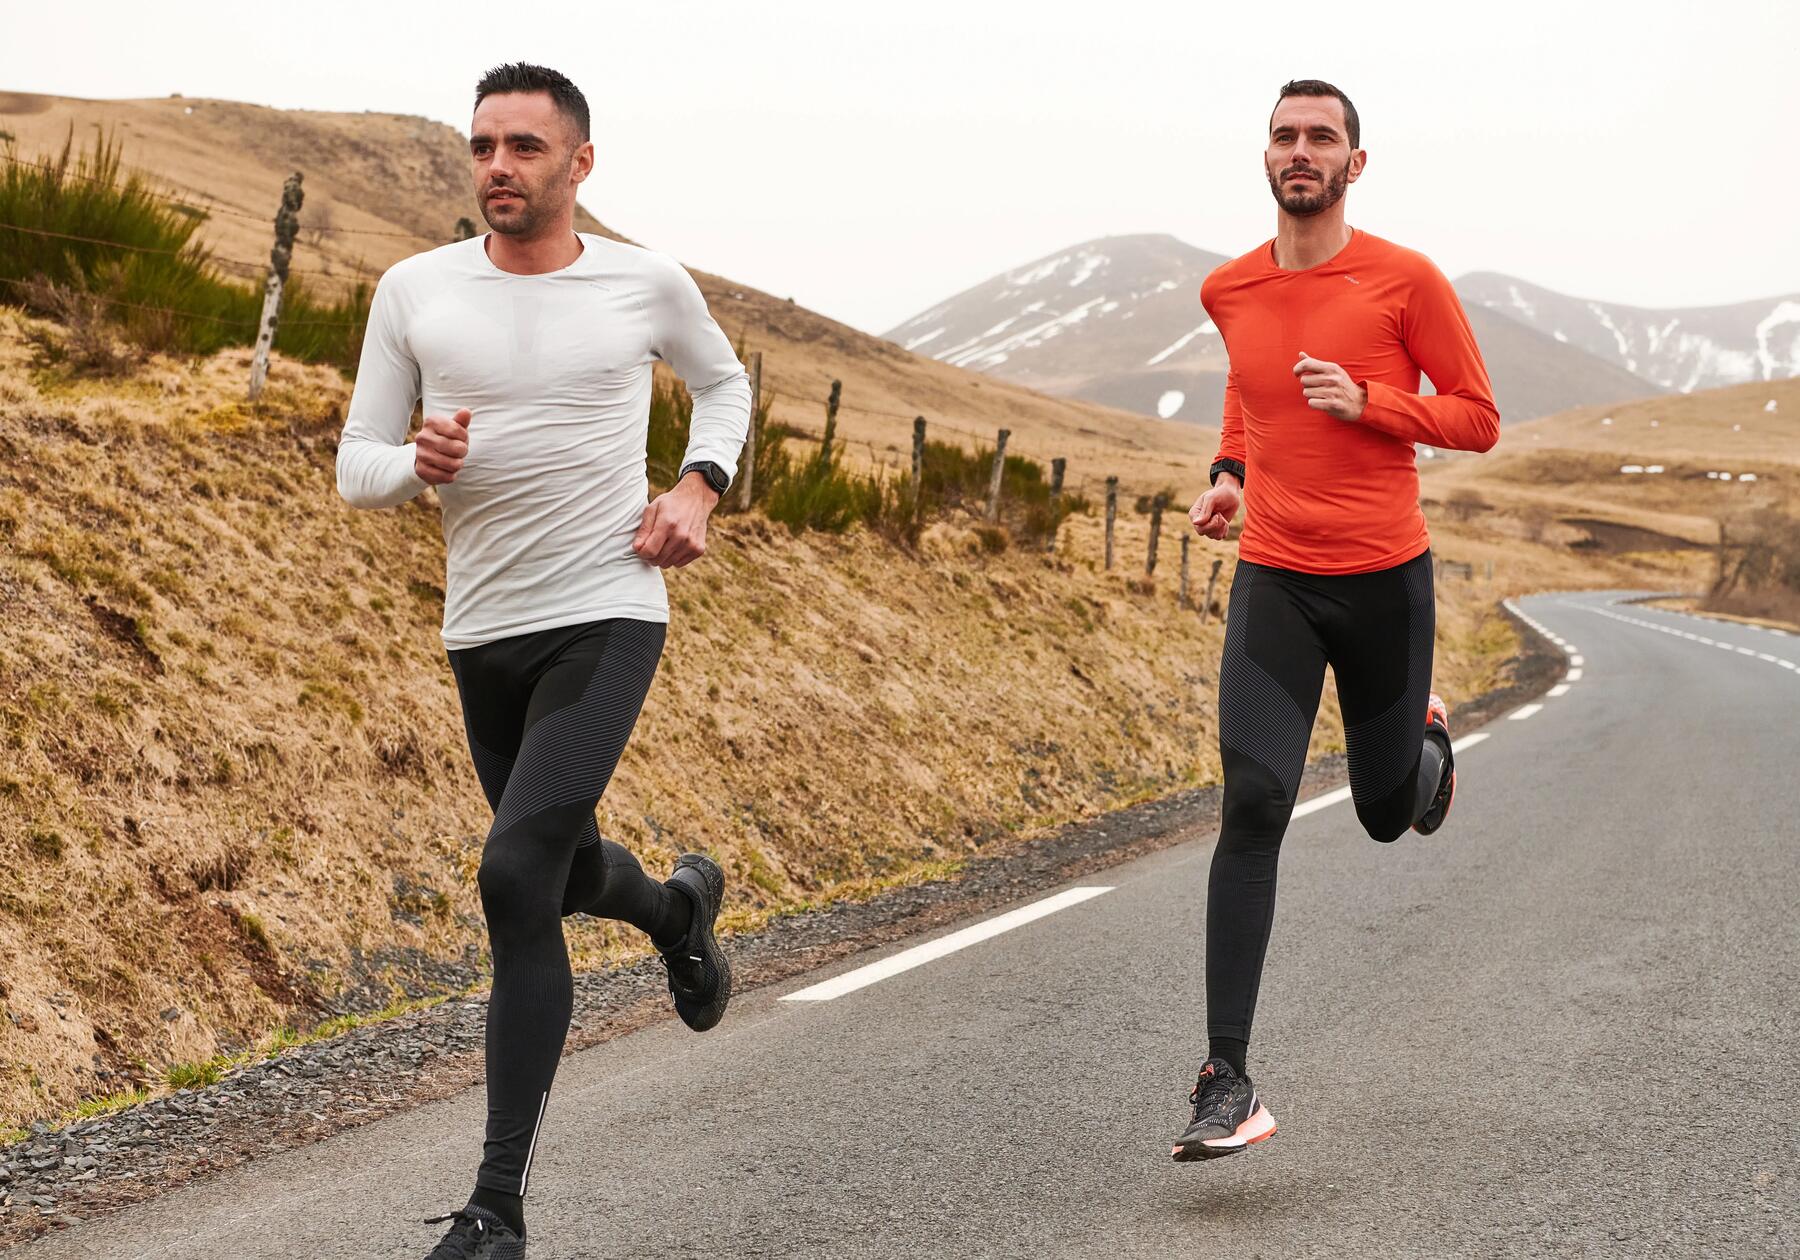 Welke spieren train je met hardlopen?